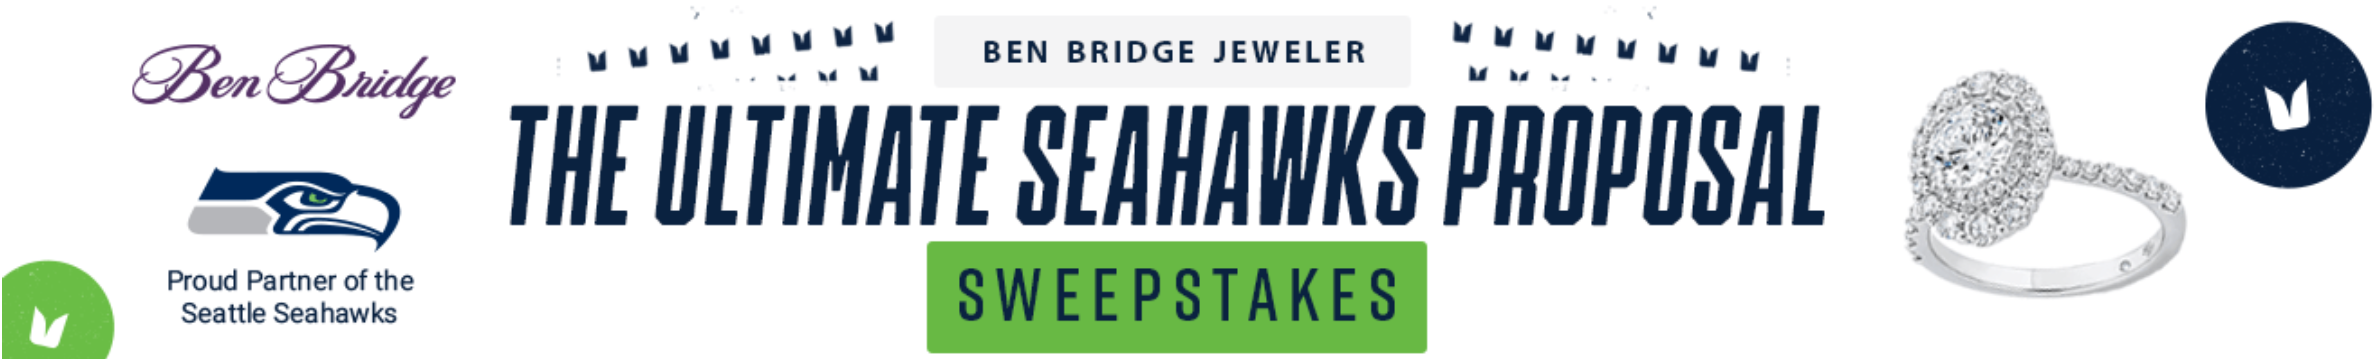 Ben Bridge Jeweler's Ultimate Seahawks Proposal Sweepstakes Logo